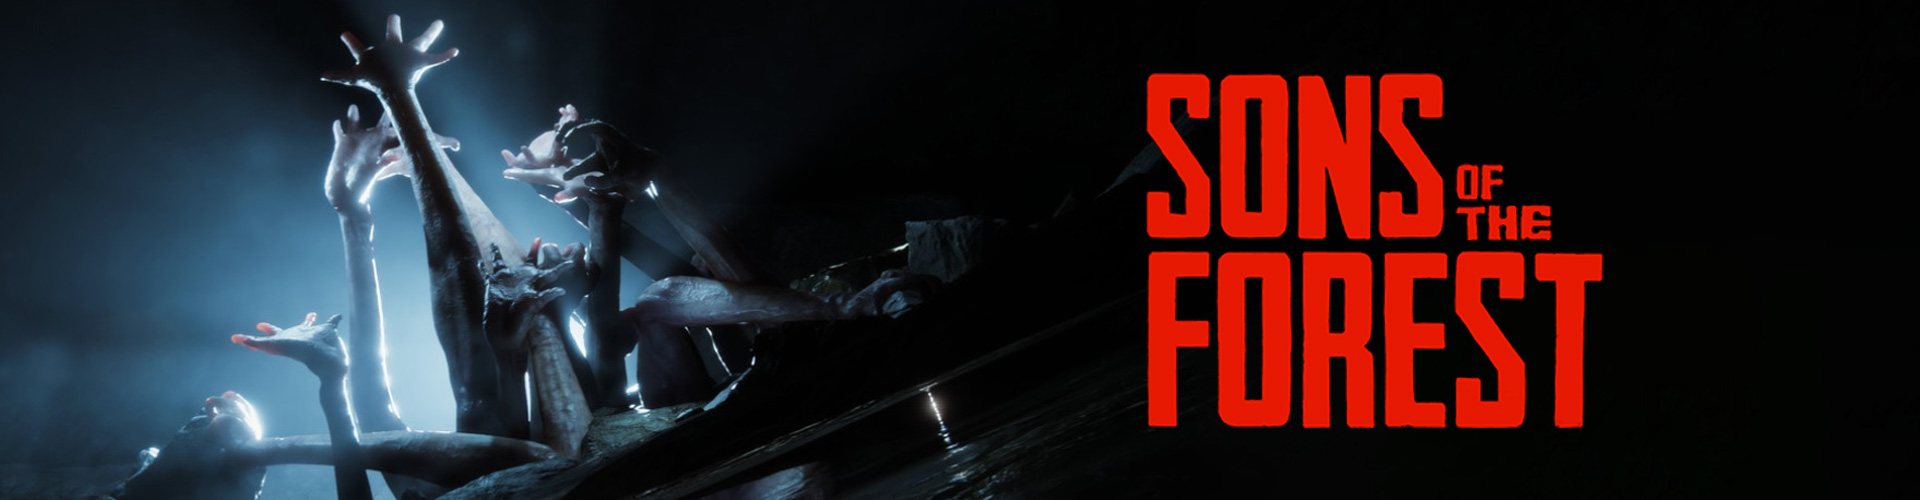  Sons of the Forest Ã© um jogo multijogador online de terror e sobrevivÃªncia